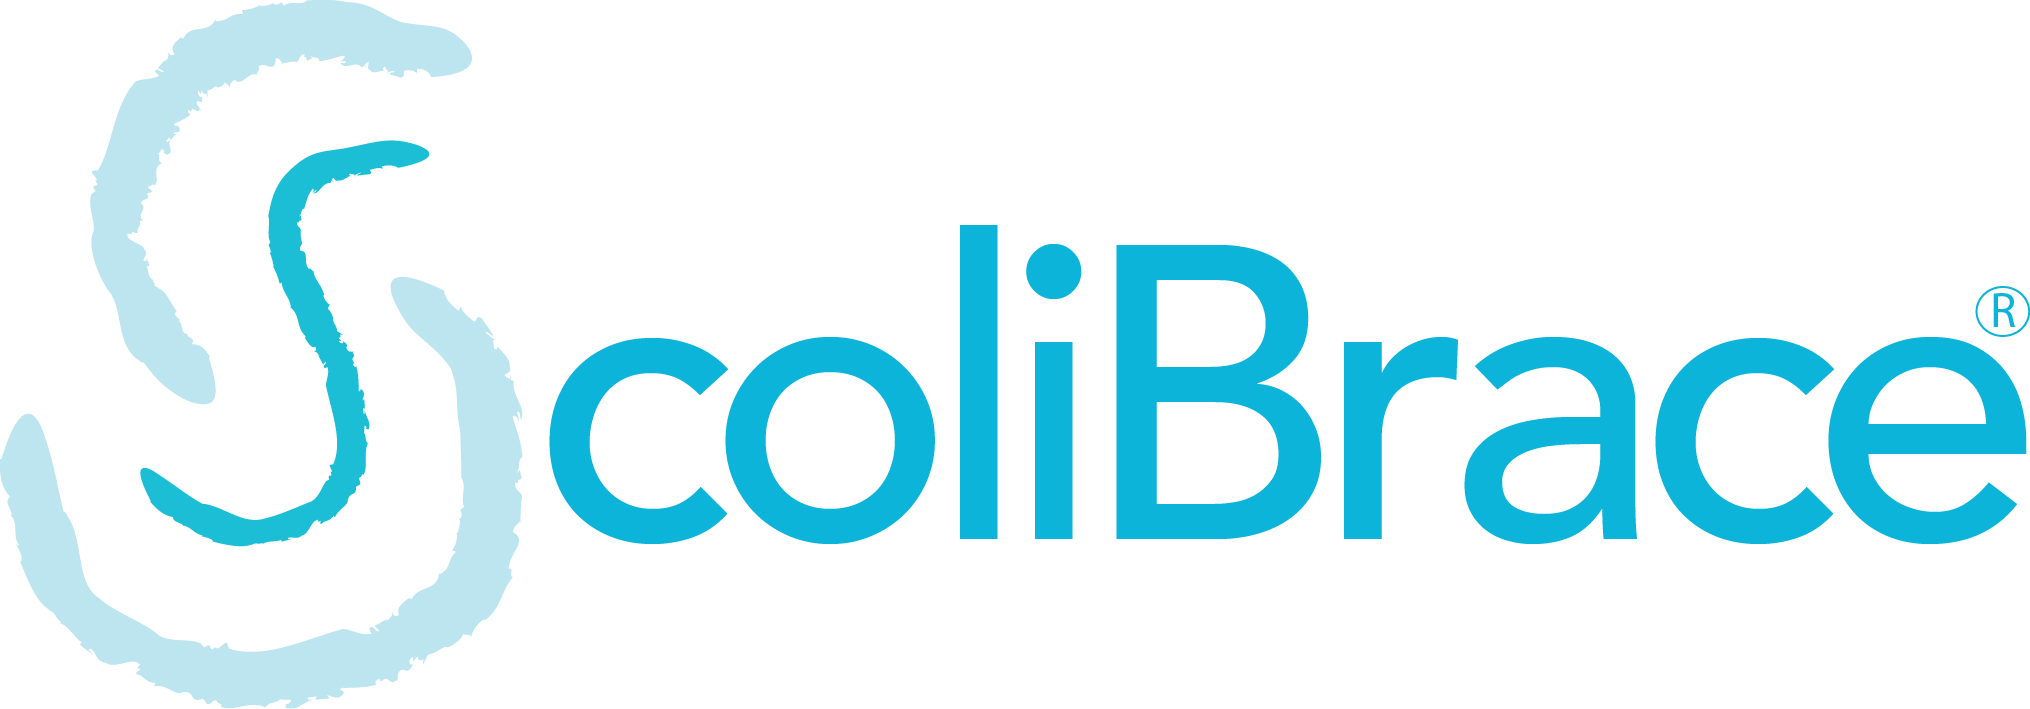 ScoliBrace-logo (1)